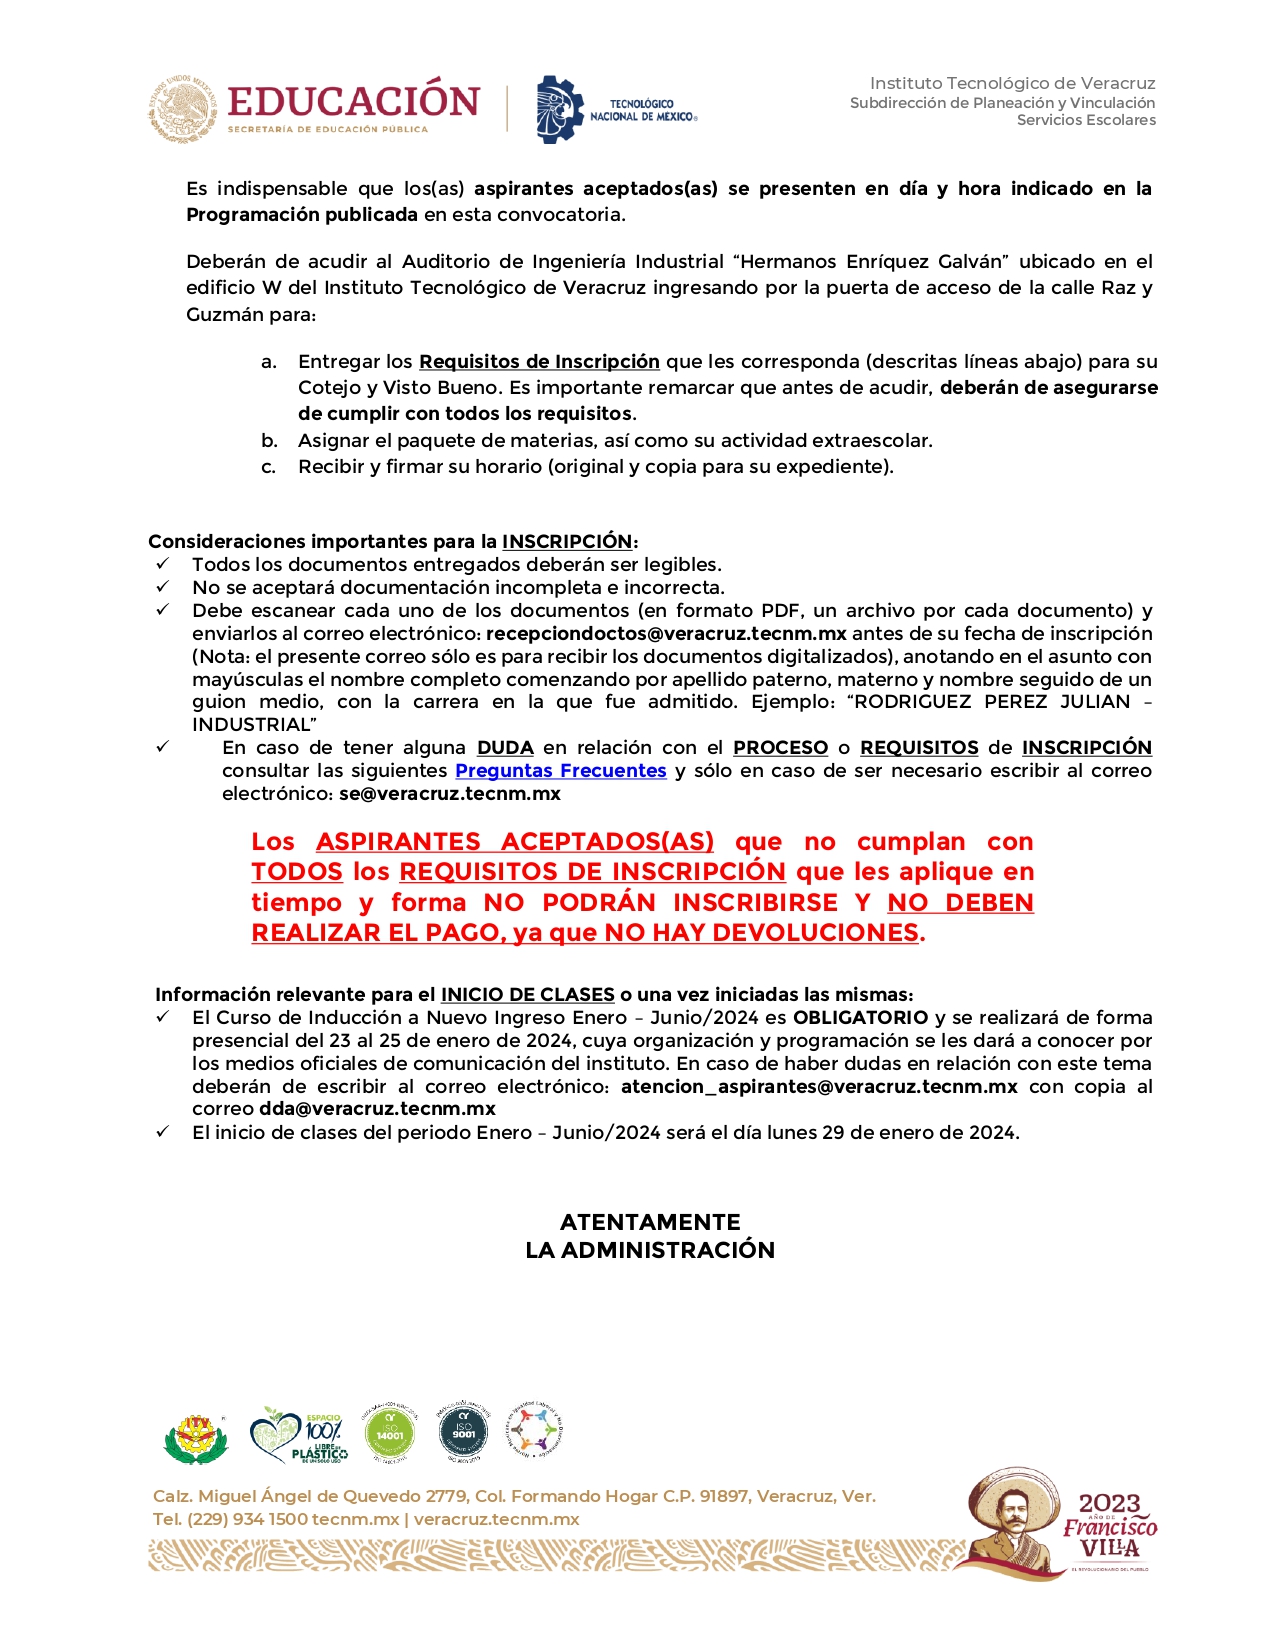 tarifa_2023-CONVOCATORIA_PARA_ASPIRANTES_ACEPTADOSAS-LICENCIATURA_ENE-JUN24_page-0002.jpg